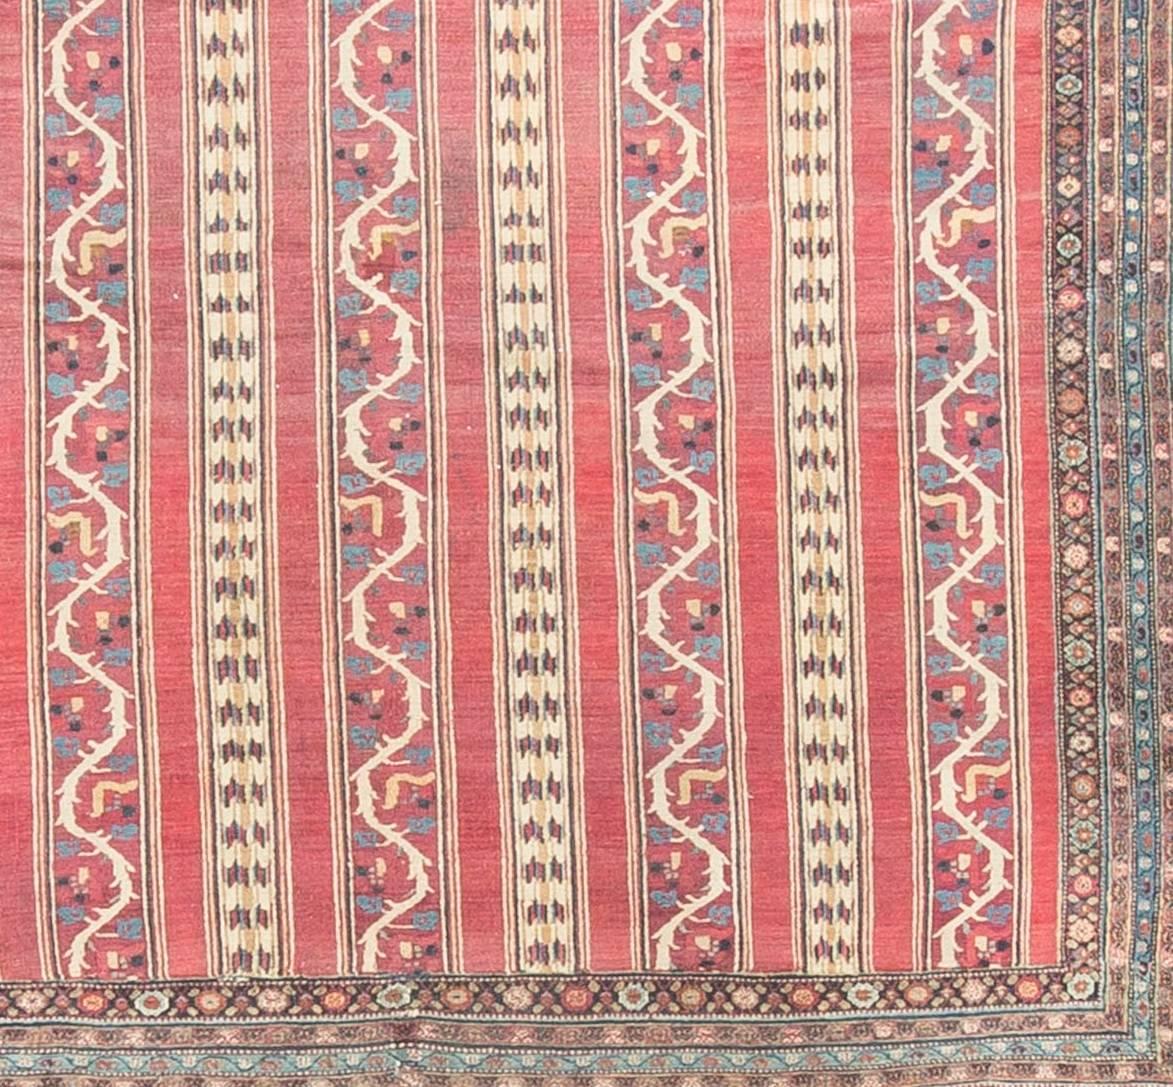 Khorassan liegt im Nordosten Persiens. Ab dem späten 19. Jahrhundert entwickelte sich Chorassan zu einem Zentrum für die Herstellung hochwertiger, raumhoher Teppiche. Mashad, eine Stadt im Bezirk Khorassan, ist ebenfalls sehr bekannt, und die beiden